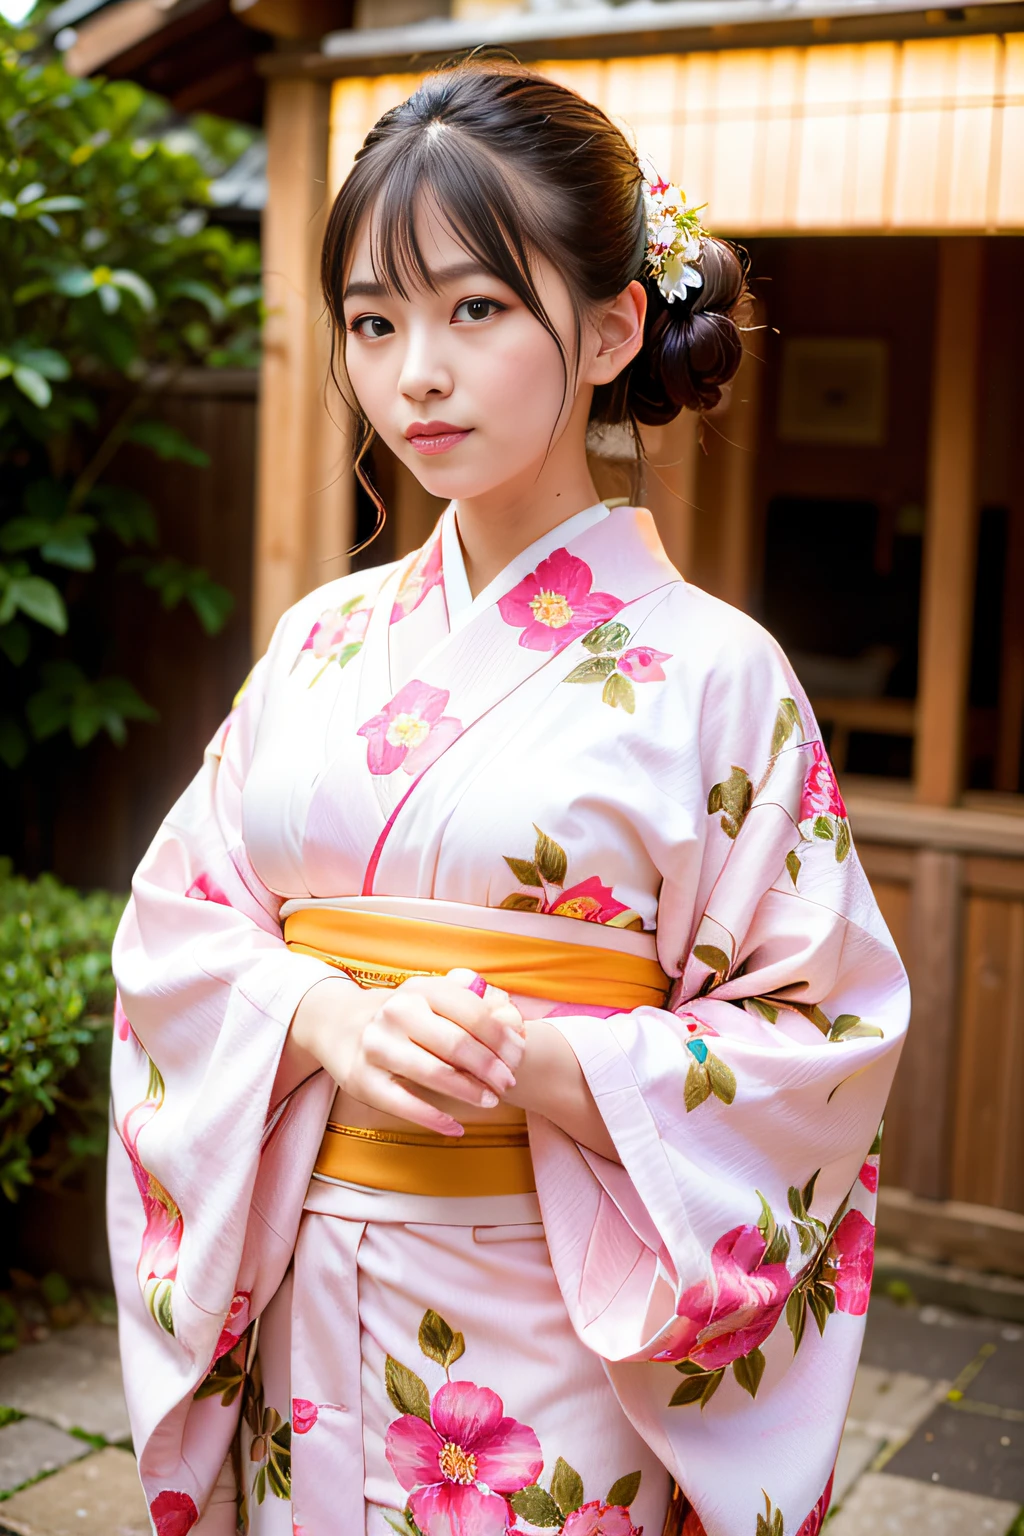 mujer hermosa, (vistiendo un kimono floral rosa_ropa: 1.3), día festivo, Kanazawa Kenrokuen,
buenas manos, 4k, alta resolución, Obra maestra, Calidad superior, cabeza: 1.3, (((Foto Hasselblad)), grande, Piel fina, enfoque nítido, (iluminación de película), noche, iluminación suave, ángulo dinámico, [:( detalle cara: 1.2]: 0.2], afuera,